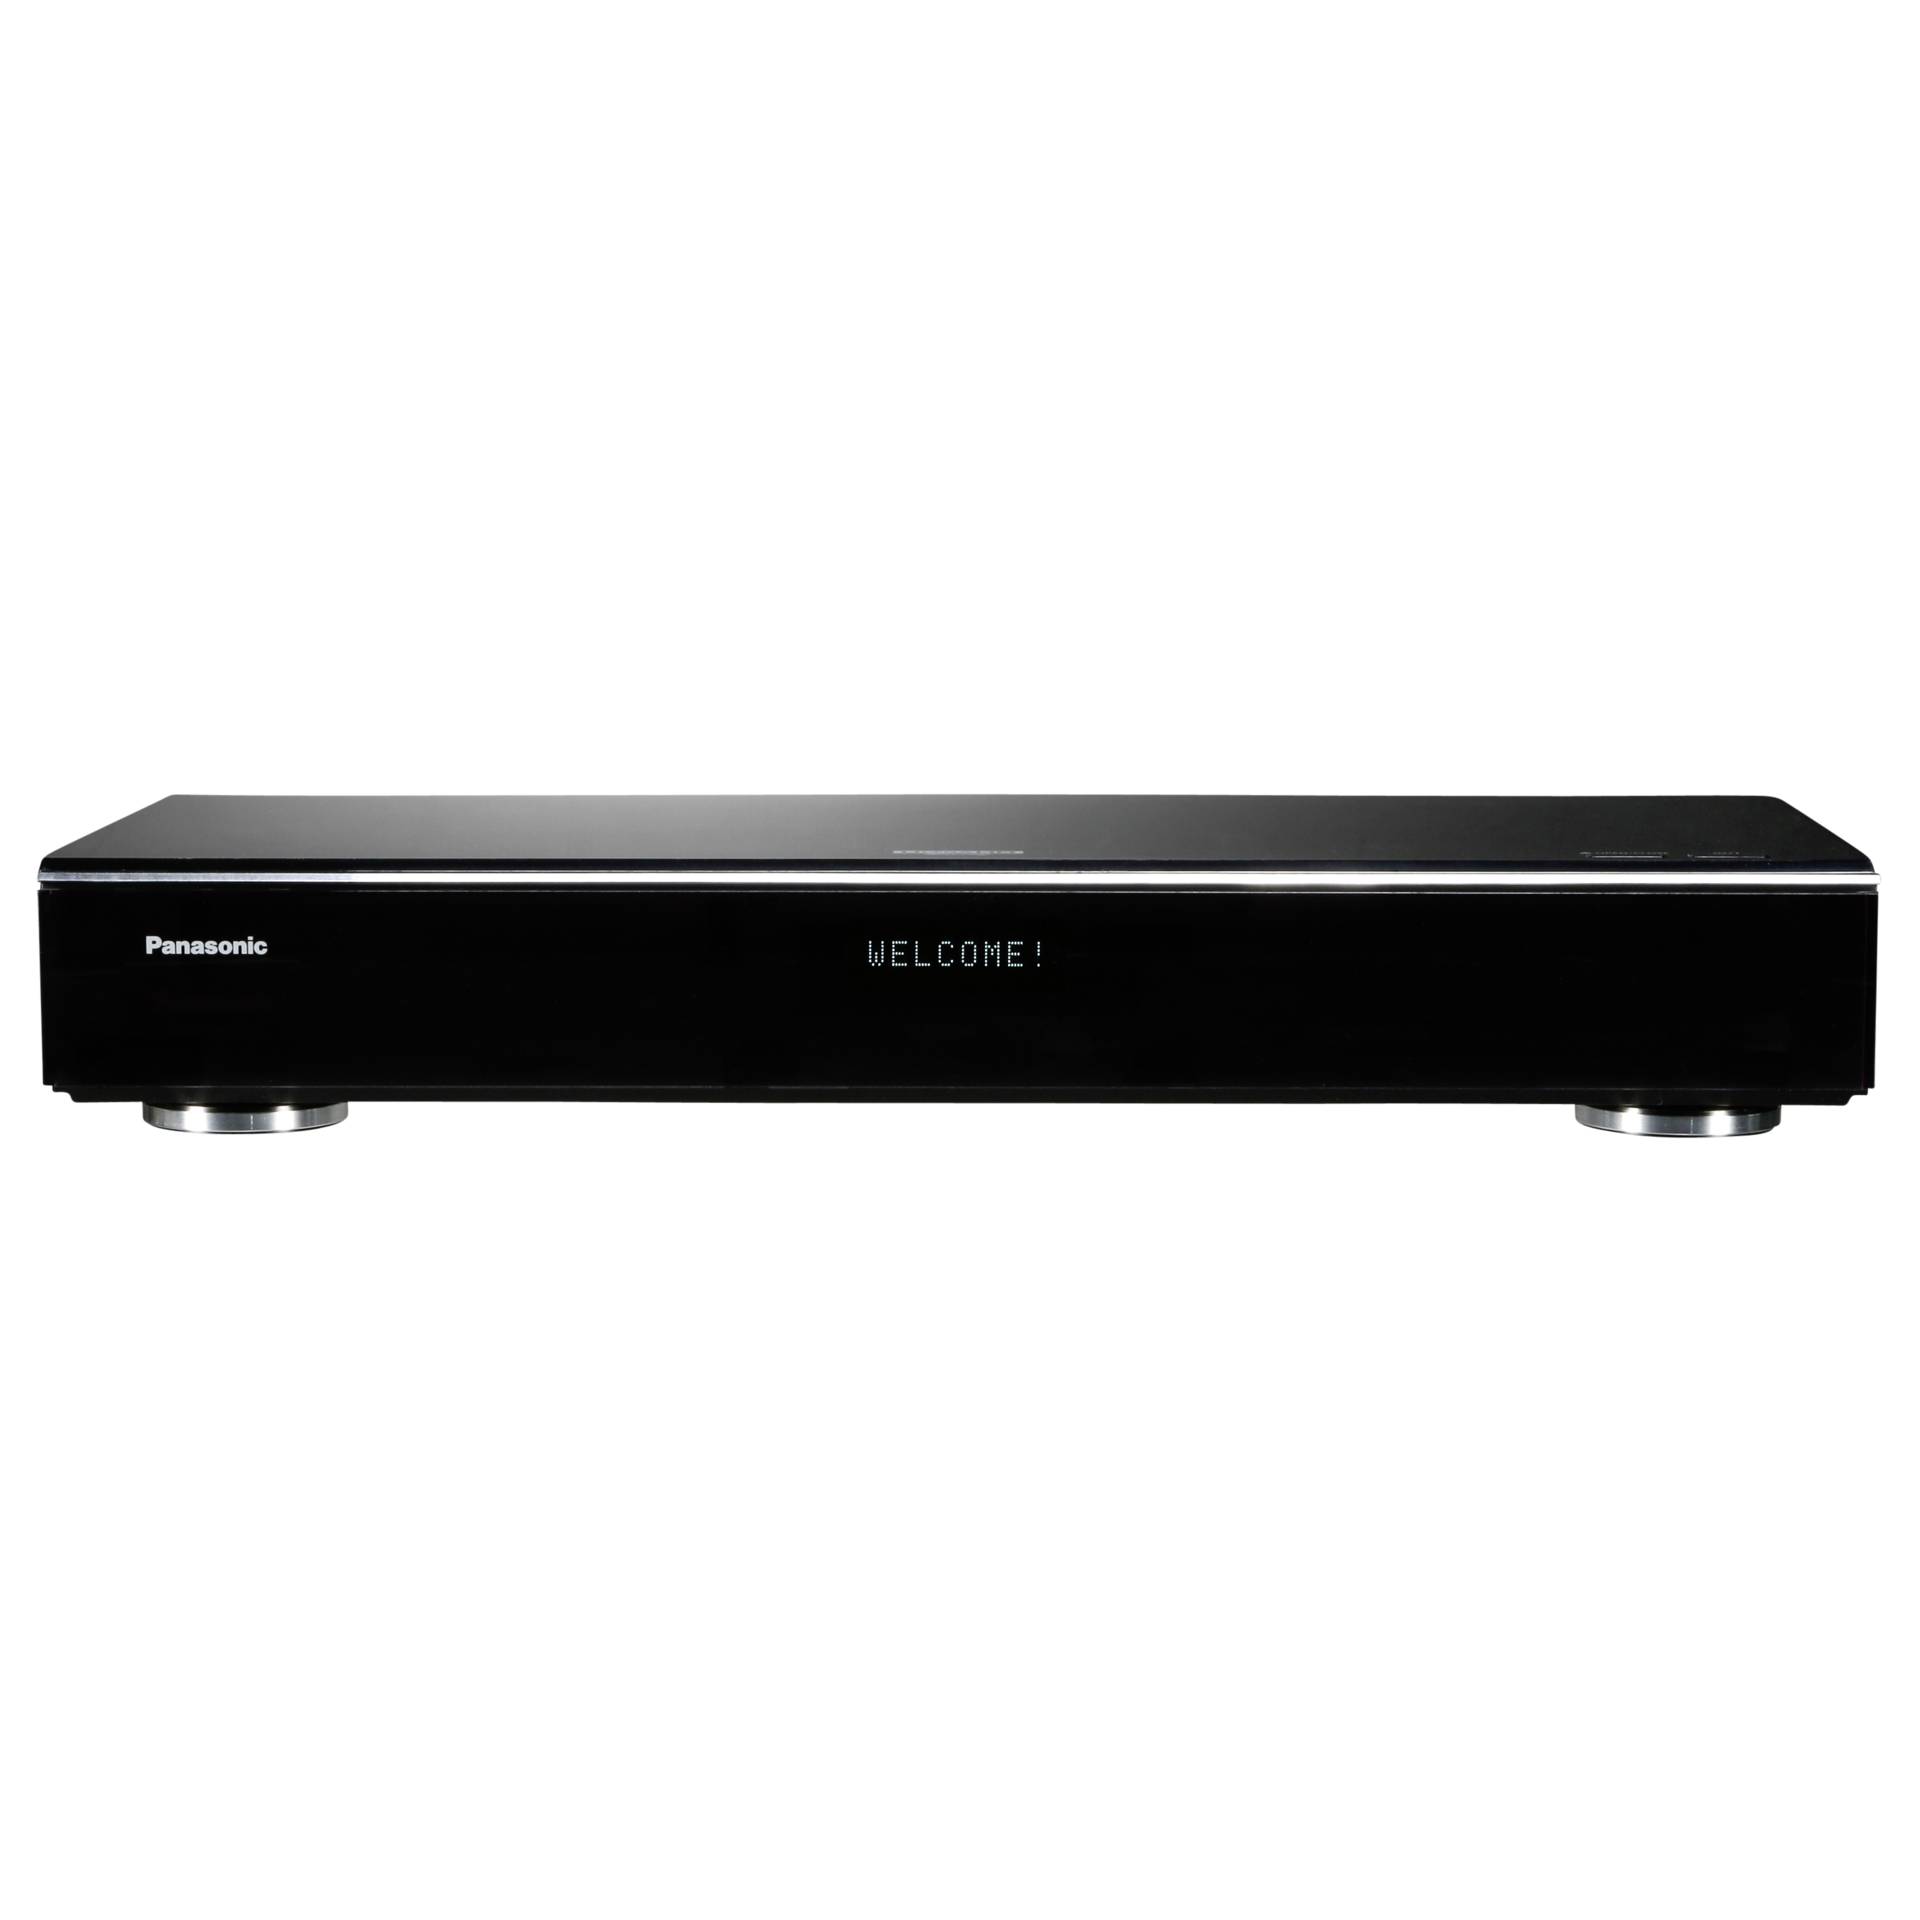 Panasonic DMR-UBS90 Blu-Ray-Rekorder, 4K-Upscaling, HDR, Ultra HD Premium, DVB-S/DVB-S2/Triple Tuner, inkl. 2TB HDD